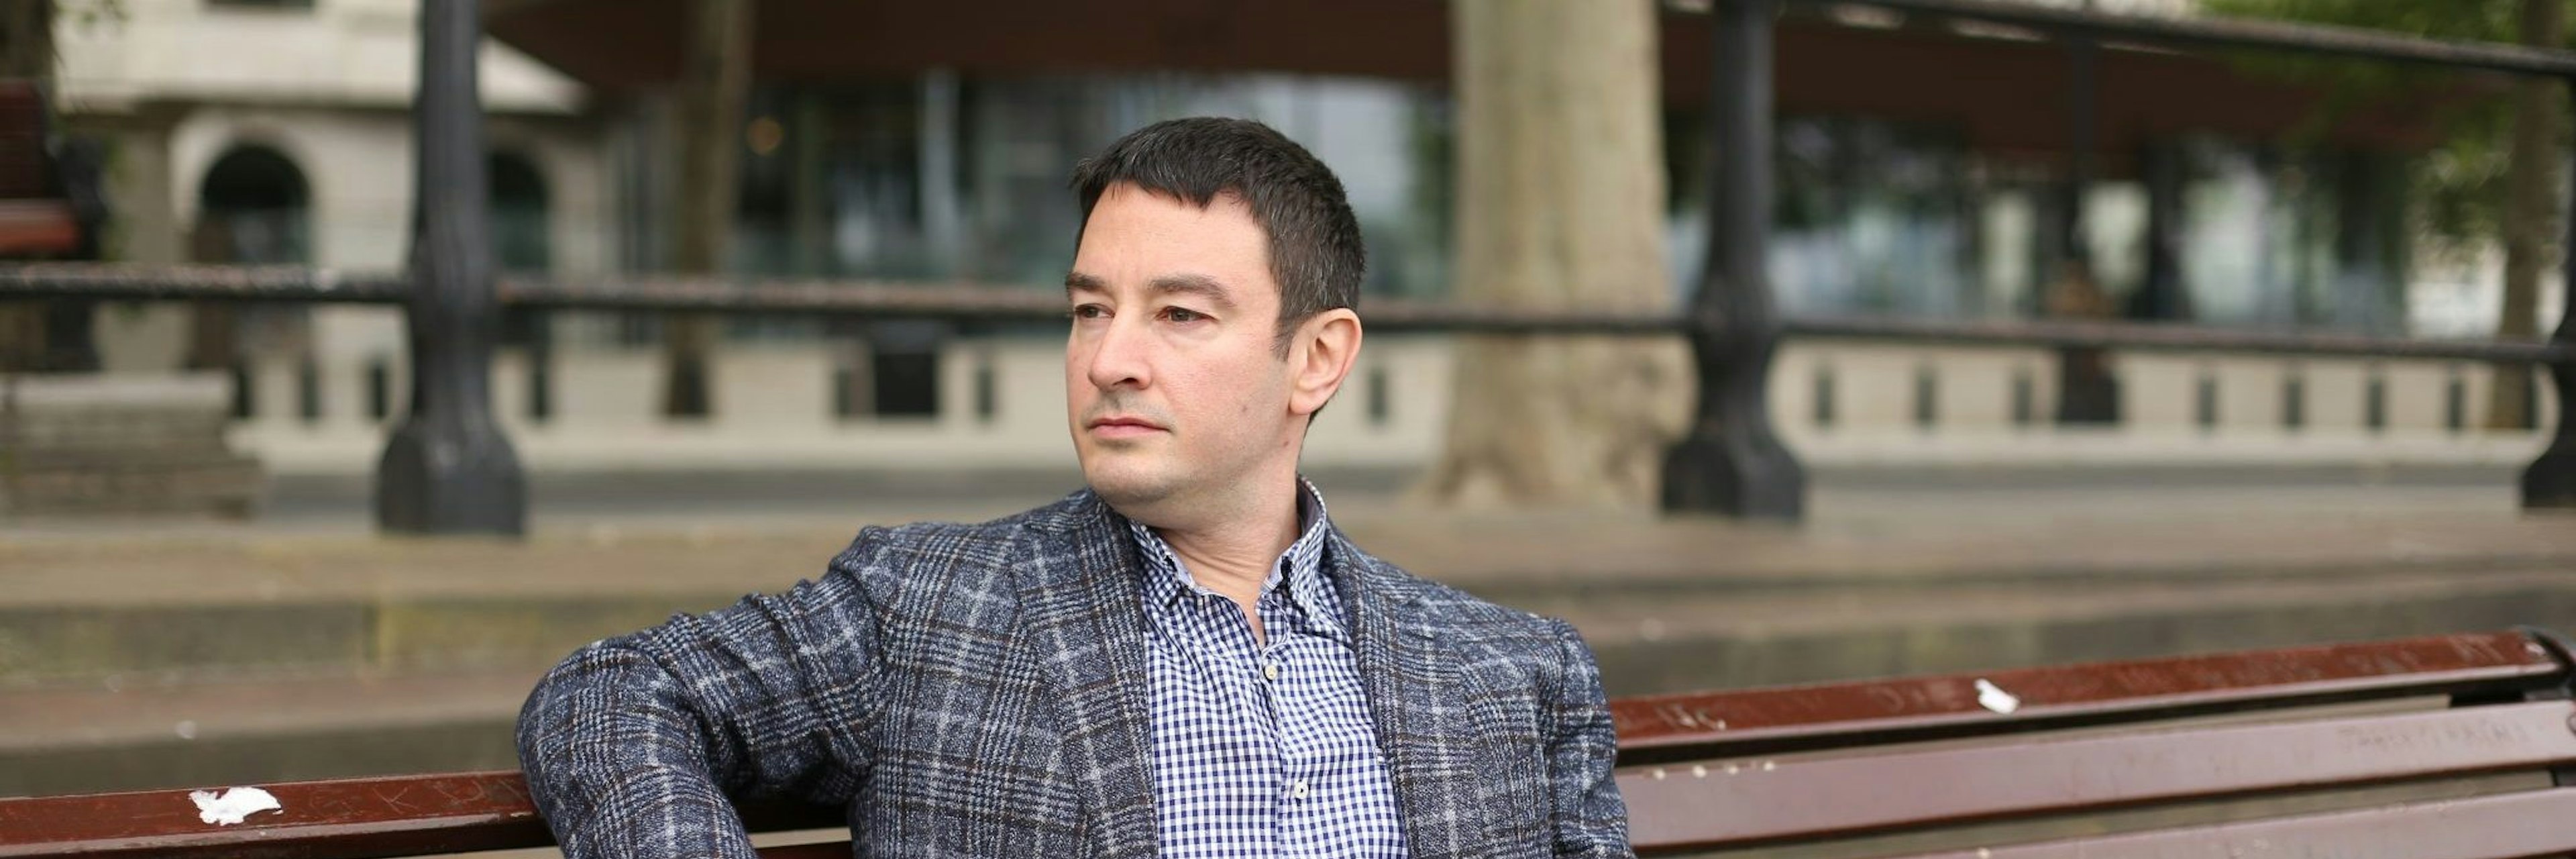 Andrey Insarov, CEO of Intis Telecom